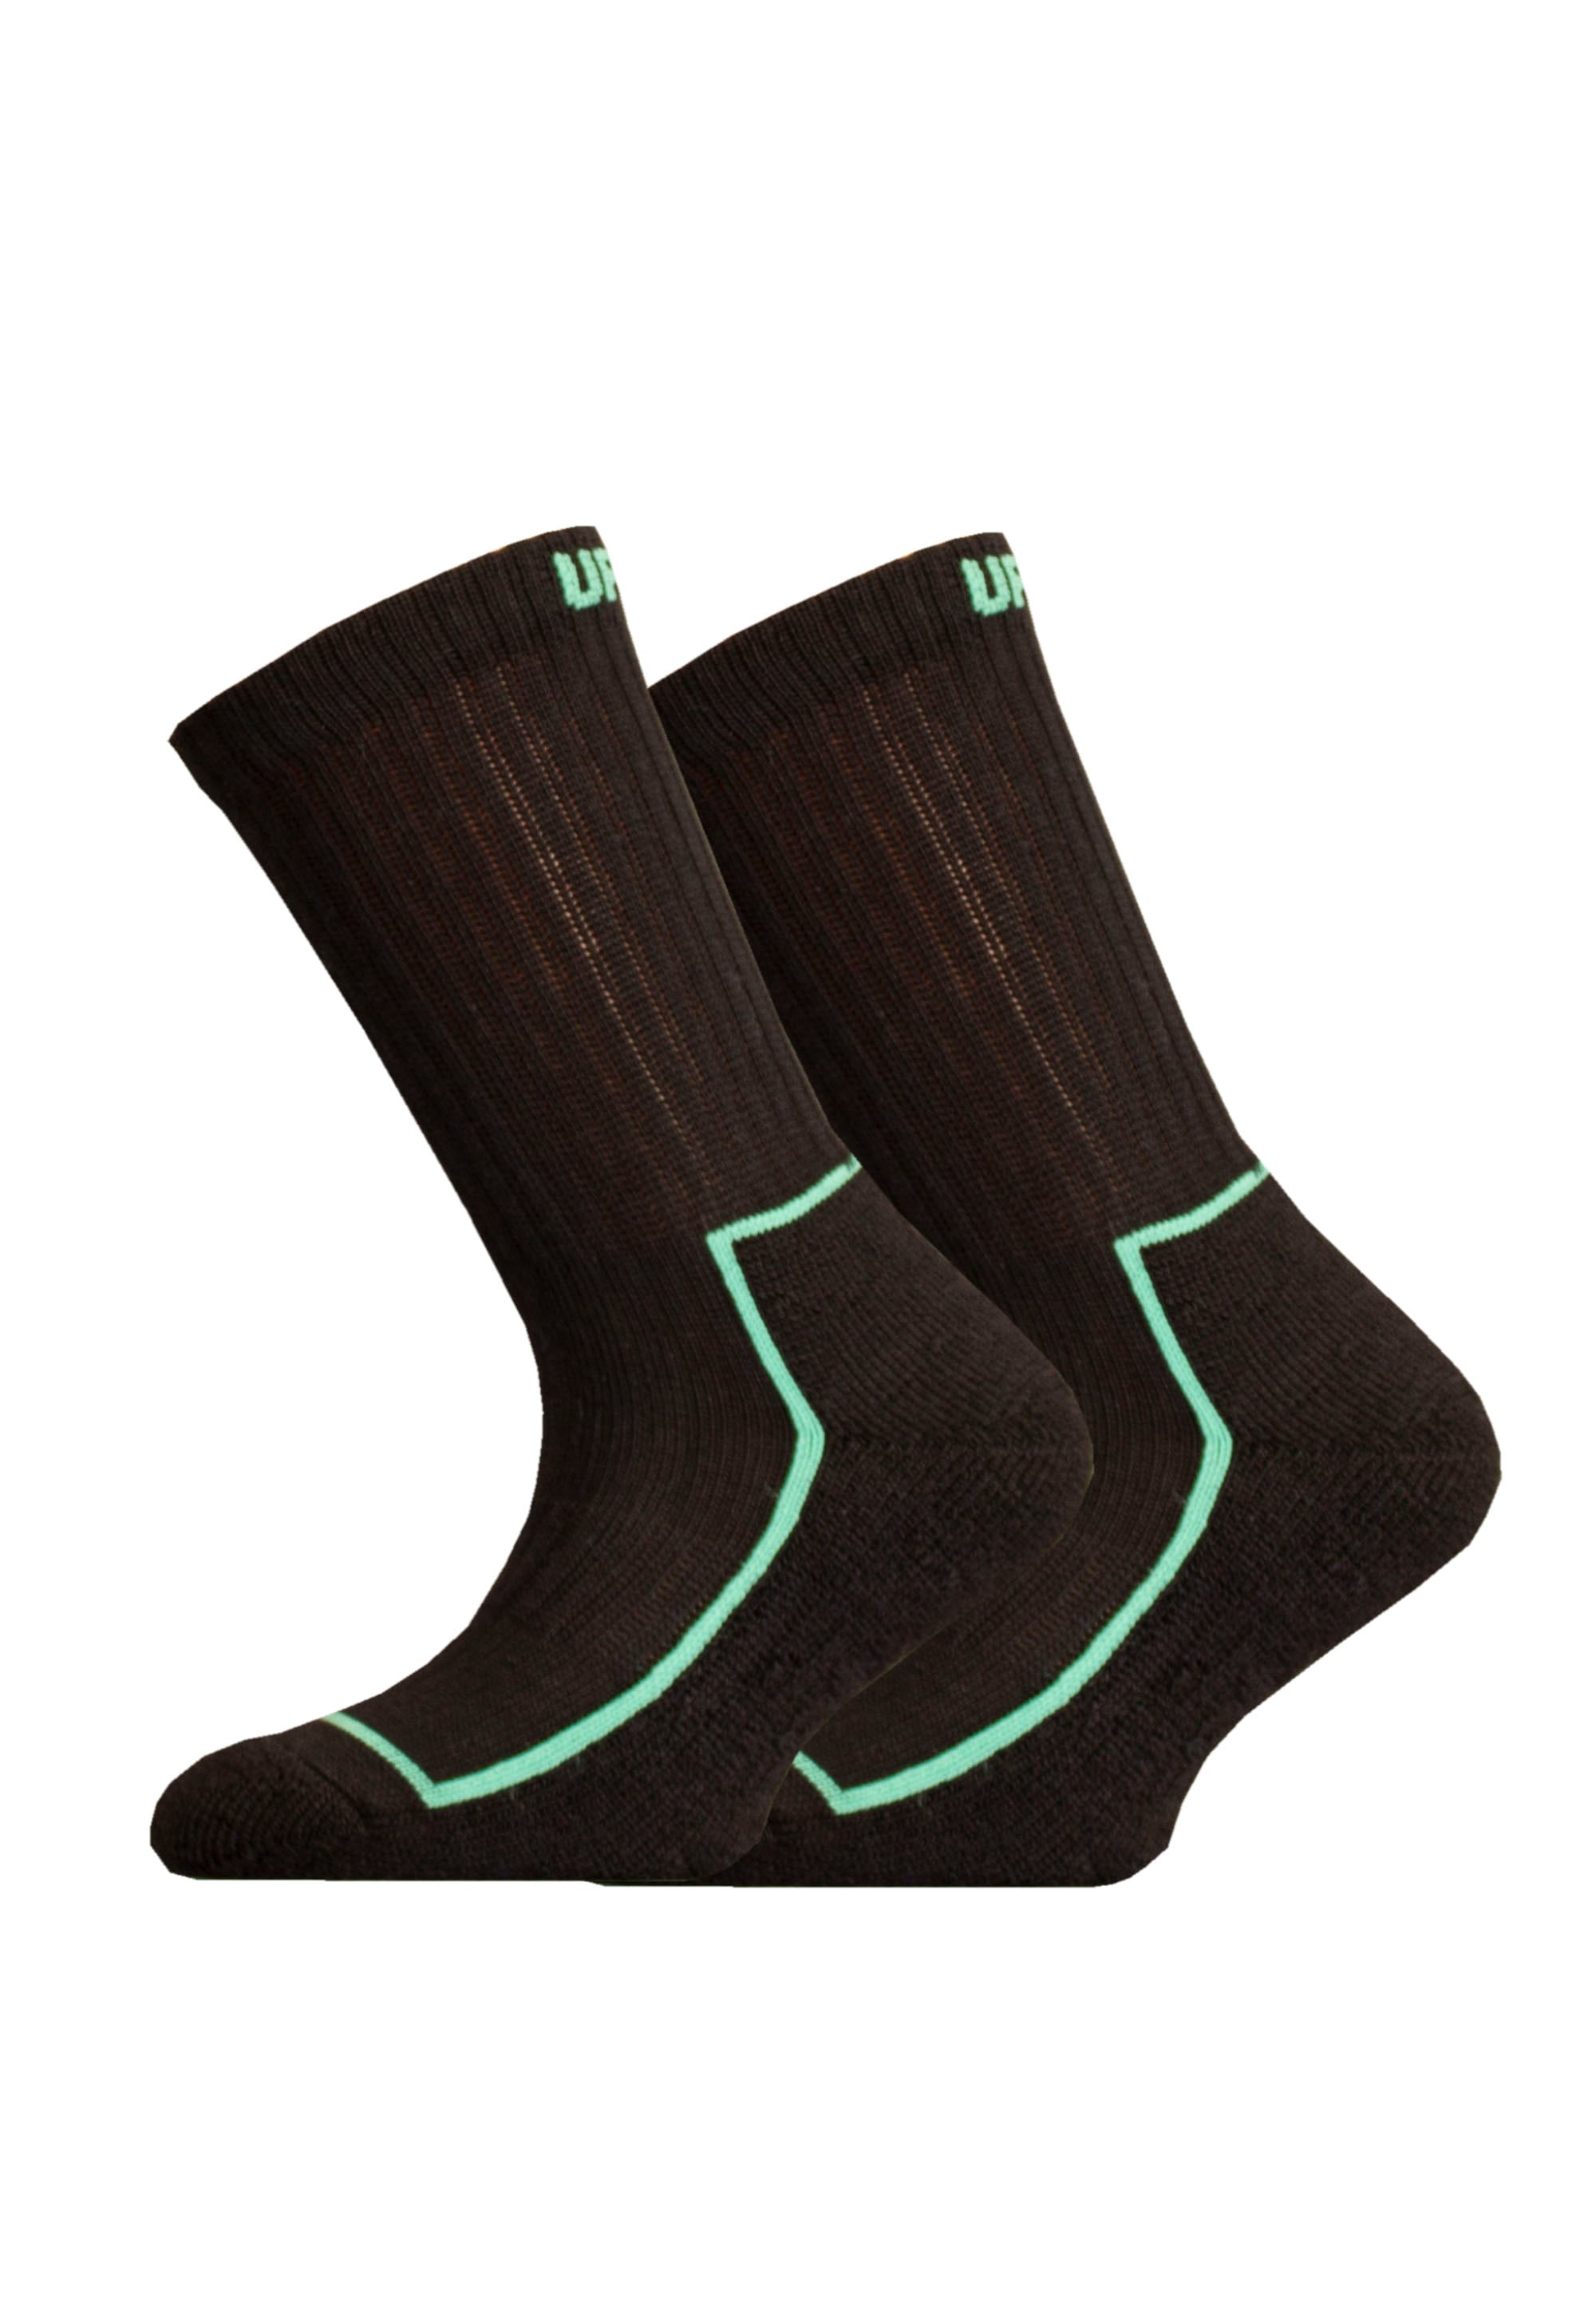 UphillSport Socken »SAANA JR 2vnt. Pack« (2 poros)...